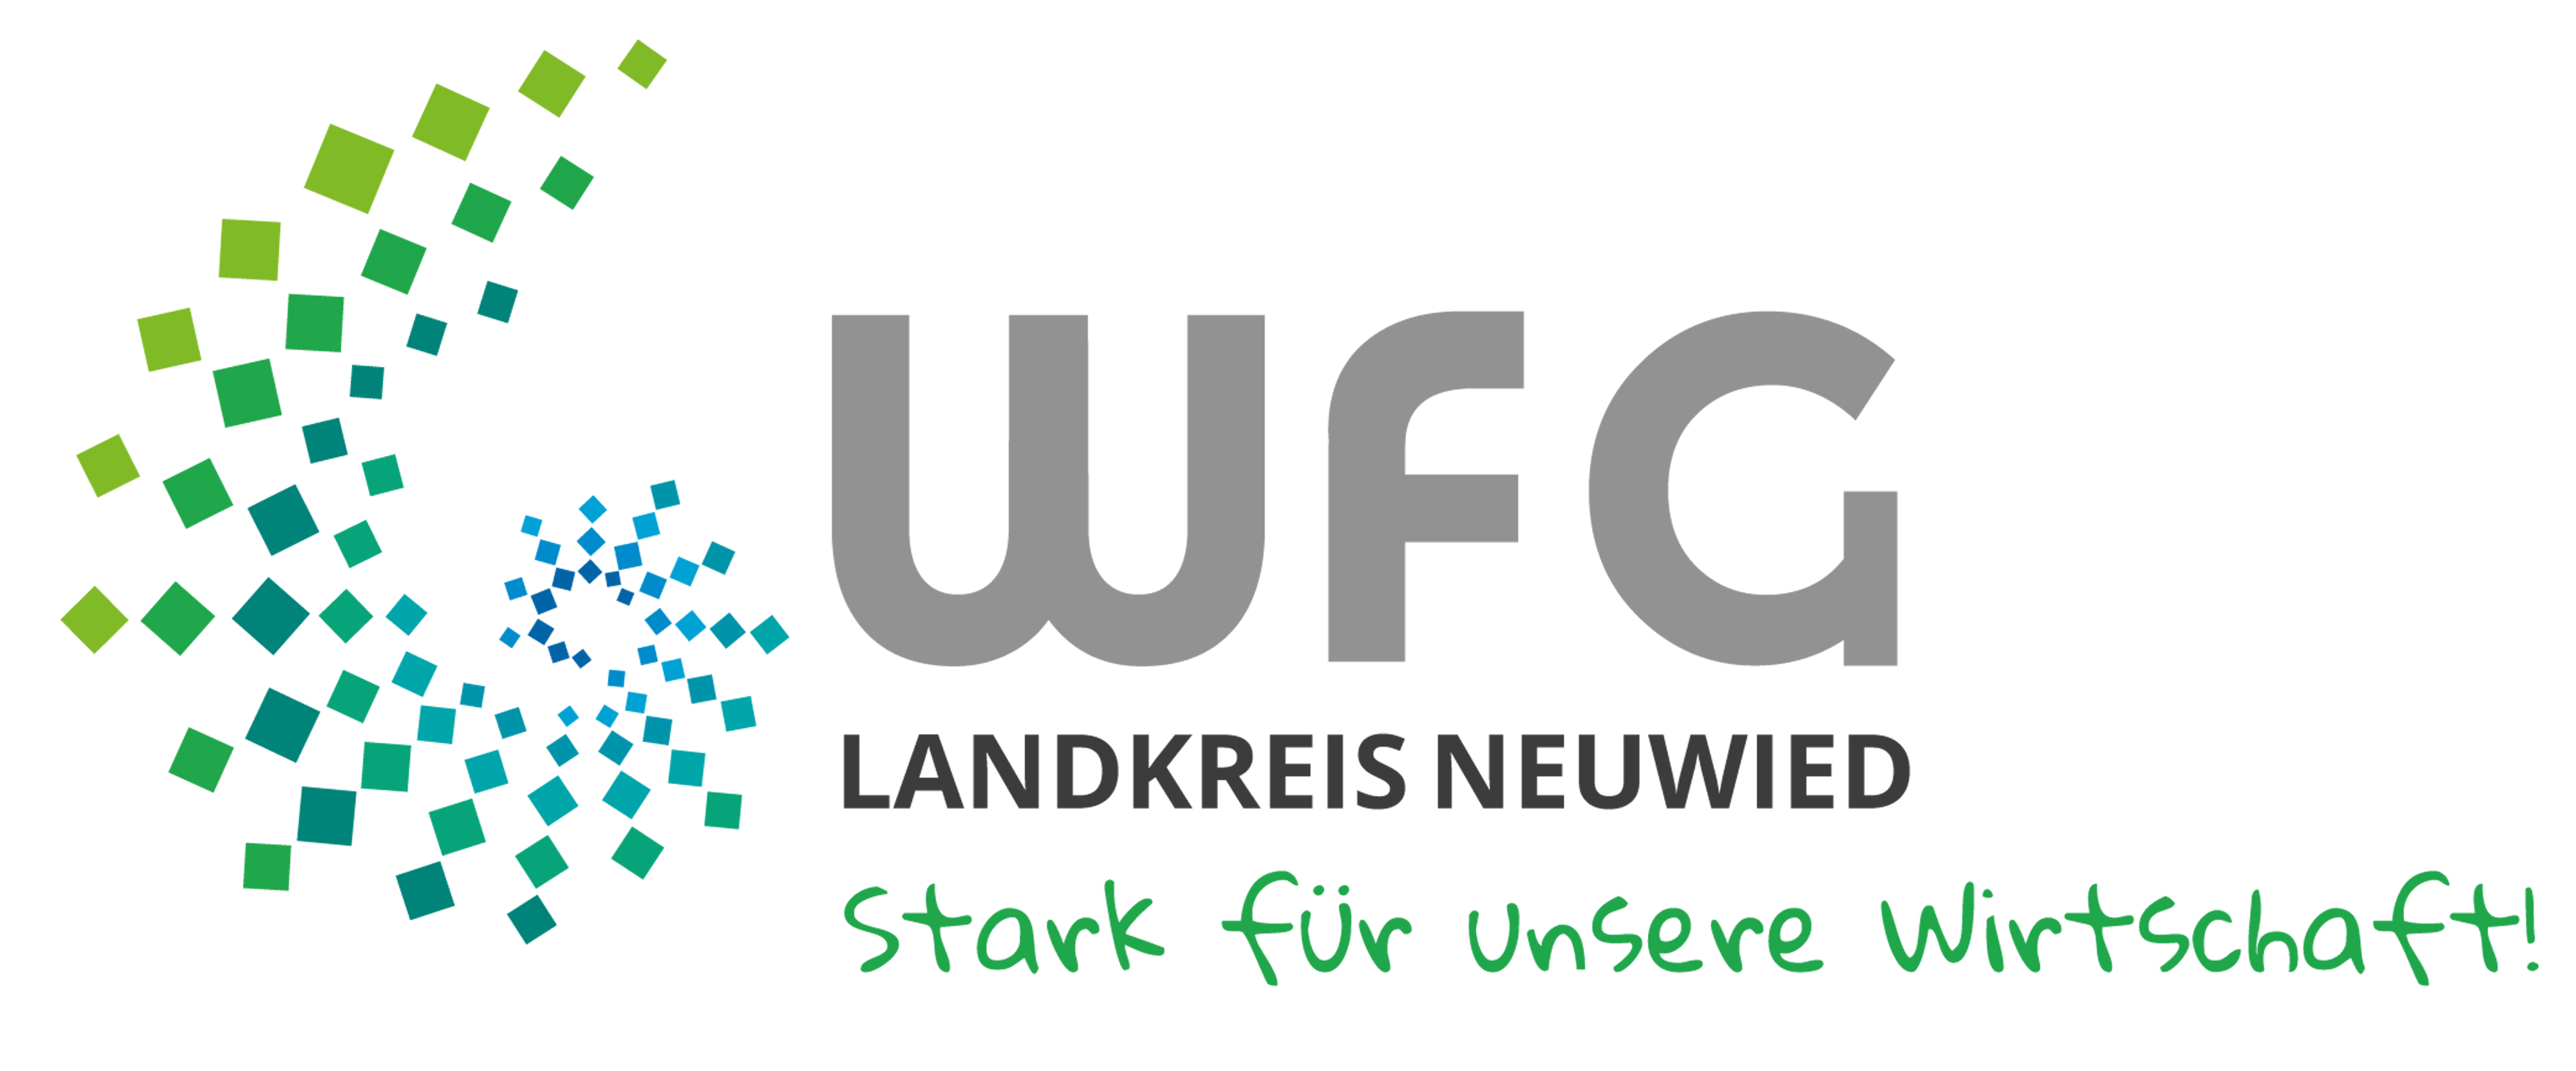 WFG im LK NR logo final 18012016